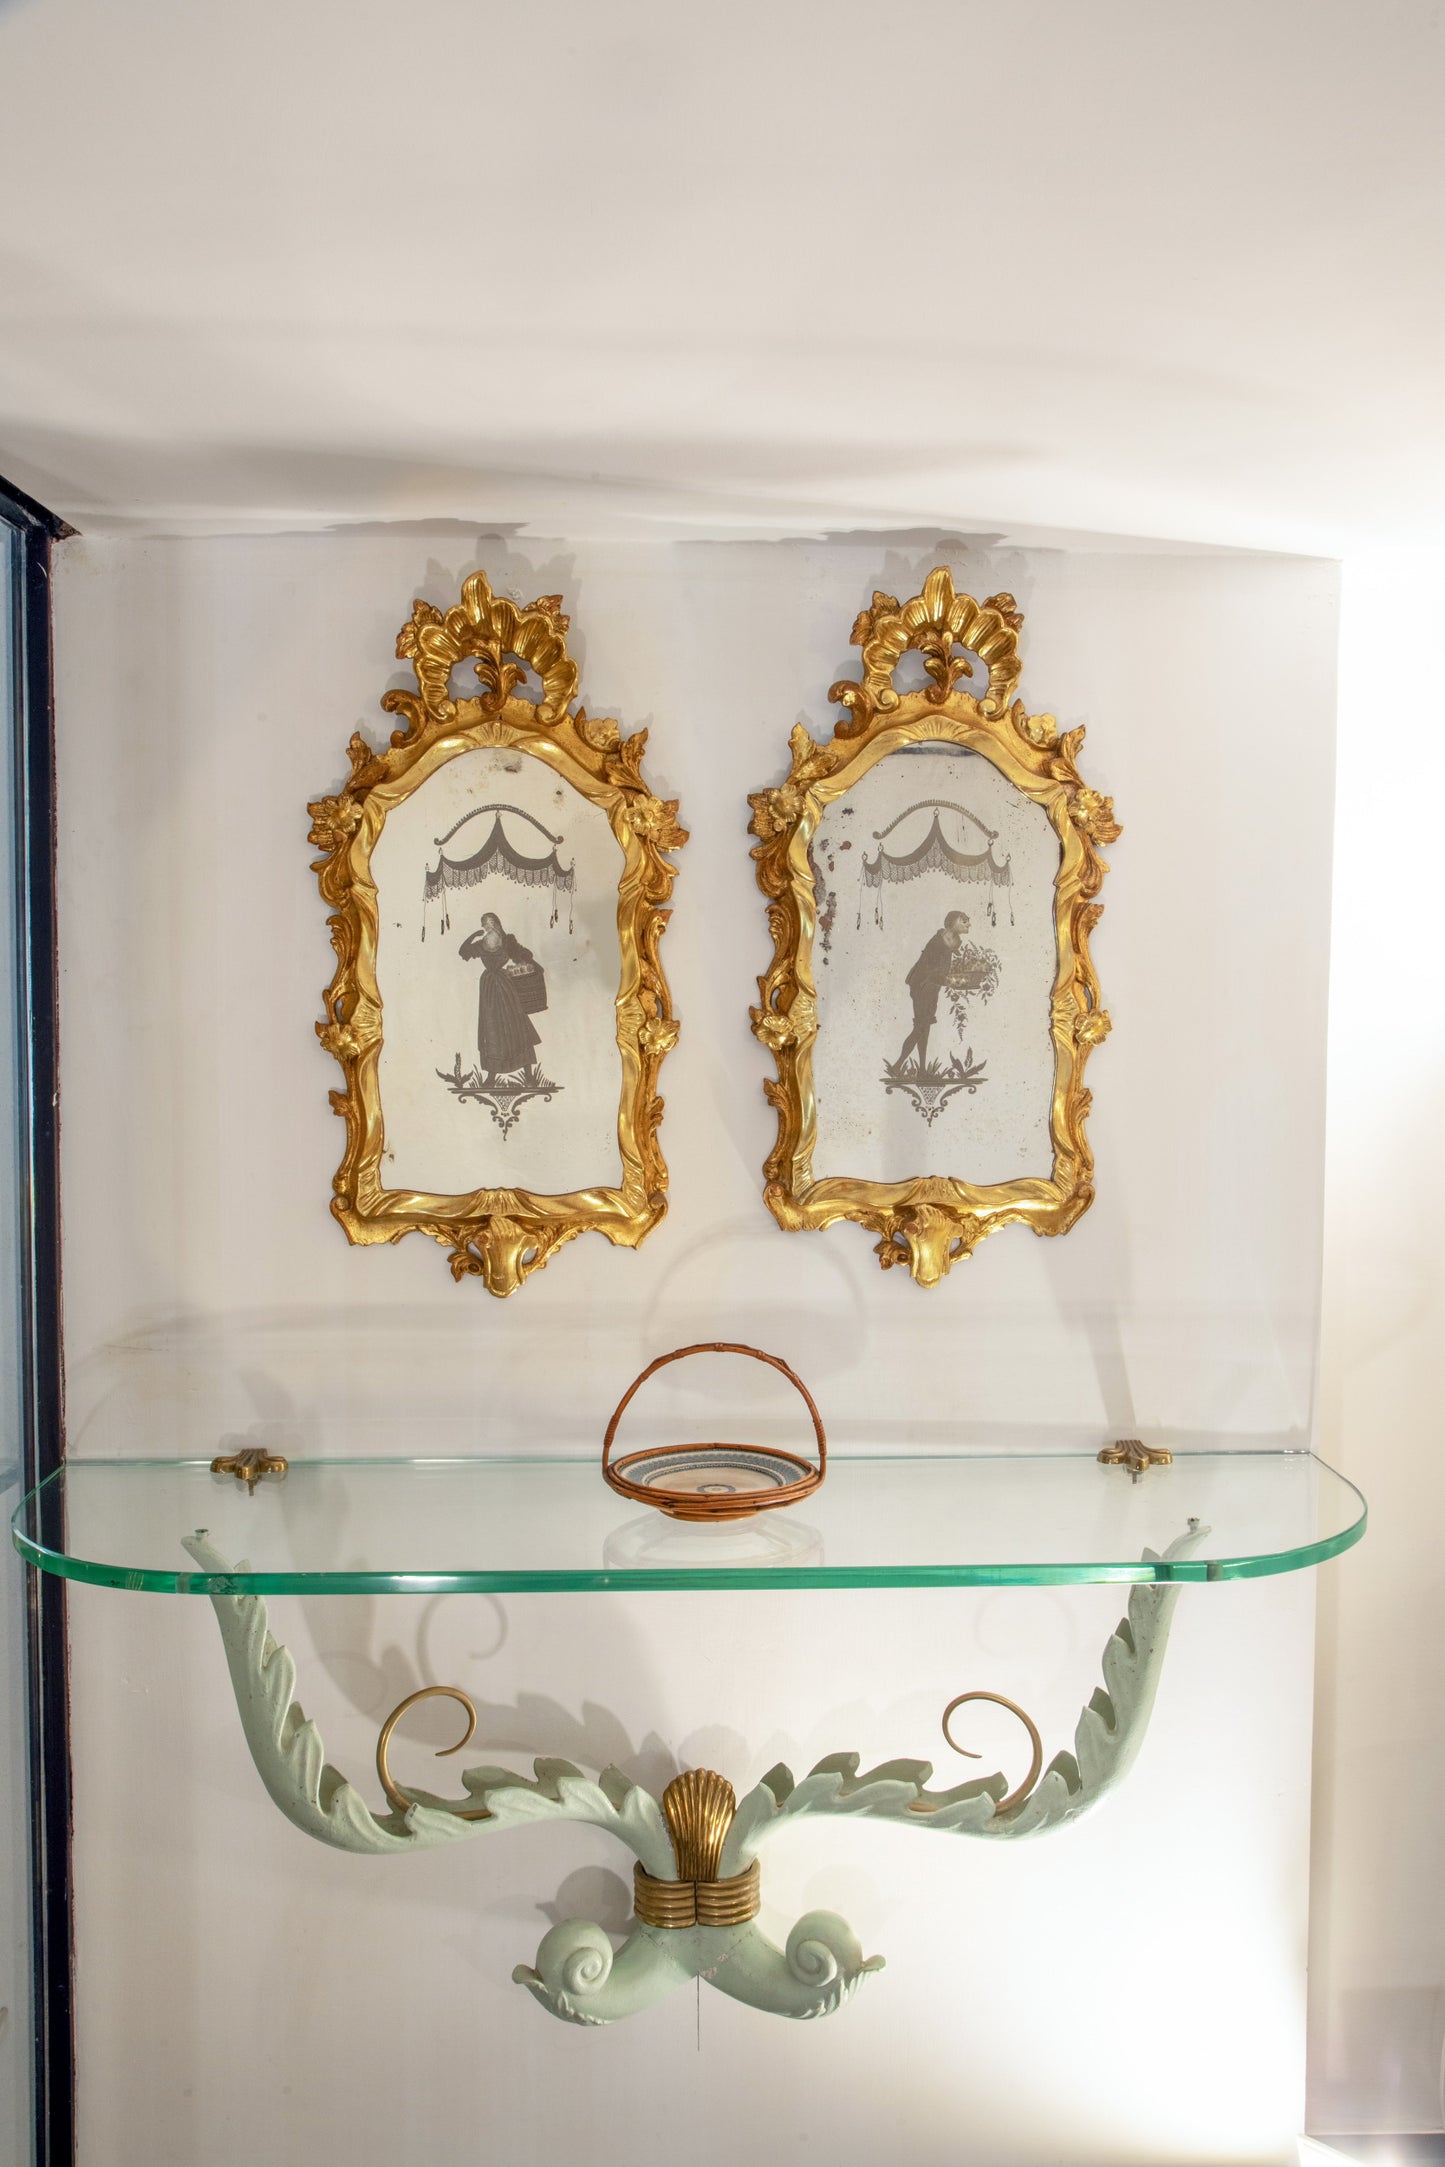 Pair of 19th century Venetian mirrors